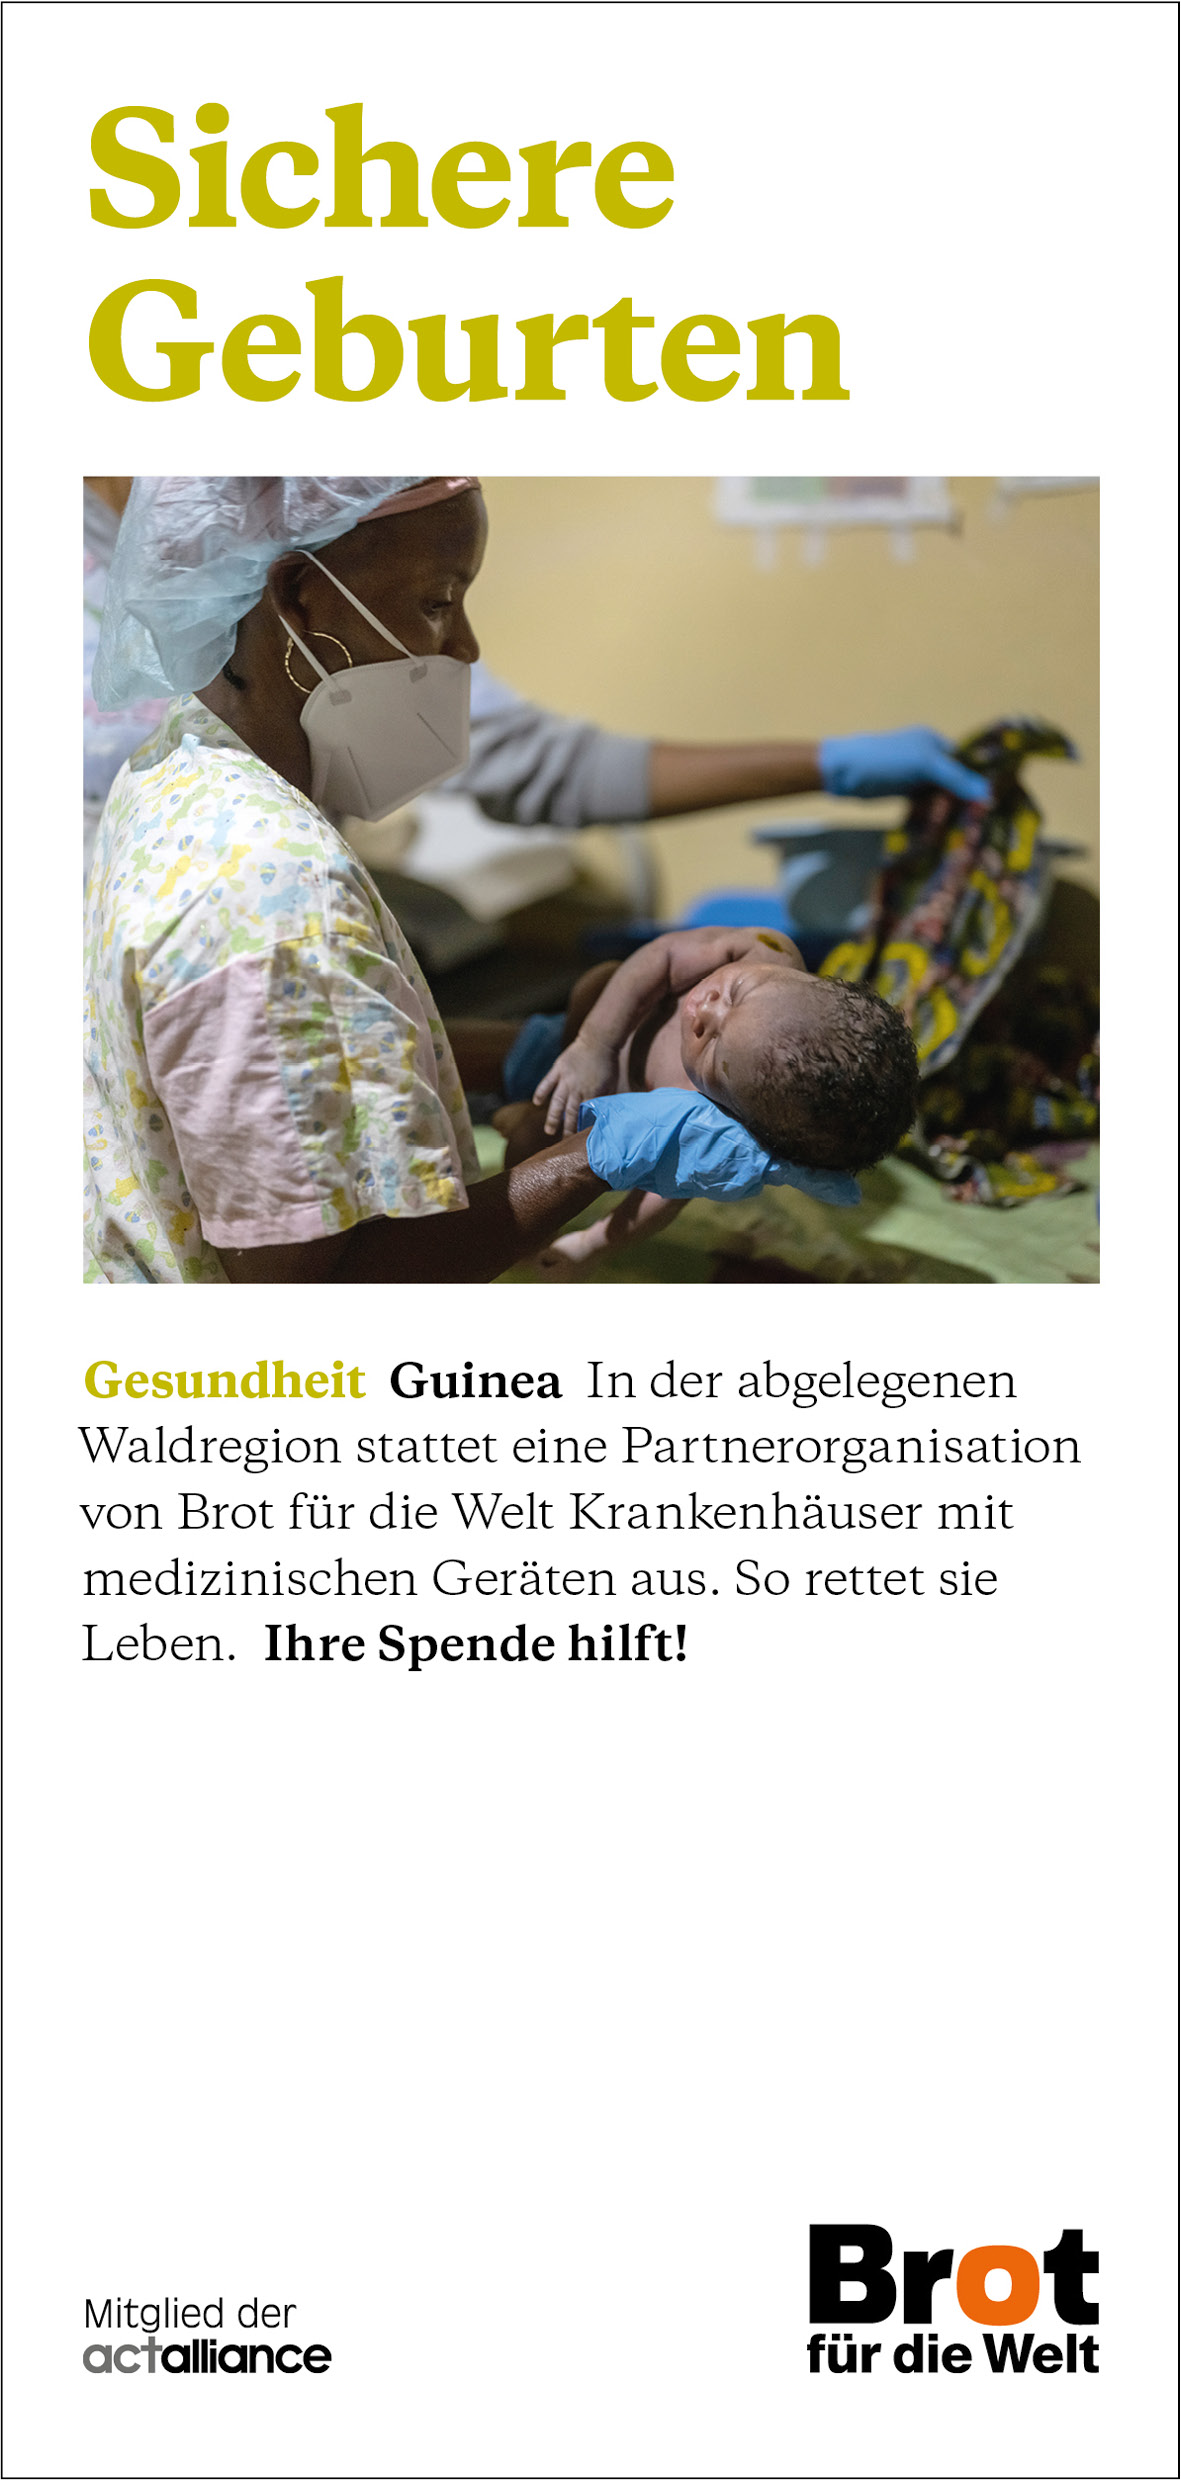 Guinea - Sichere Geburten (Faltblatt Gesundheit)